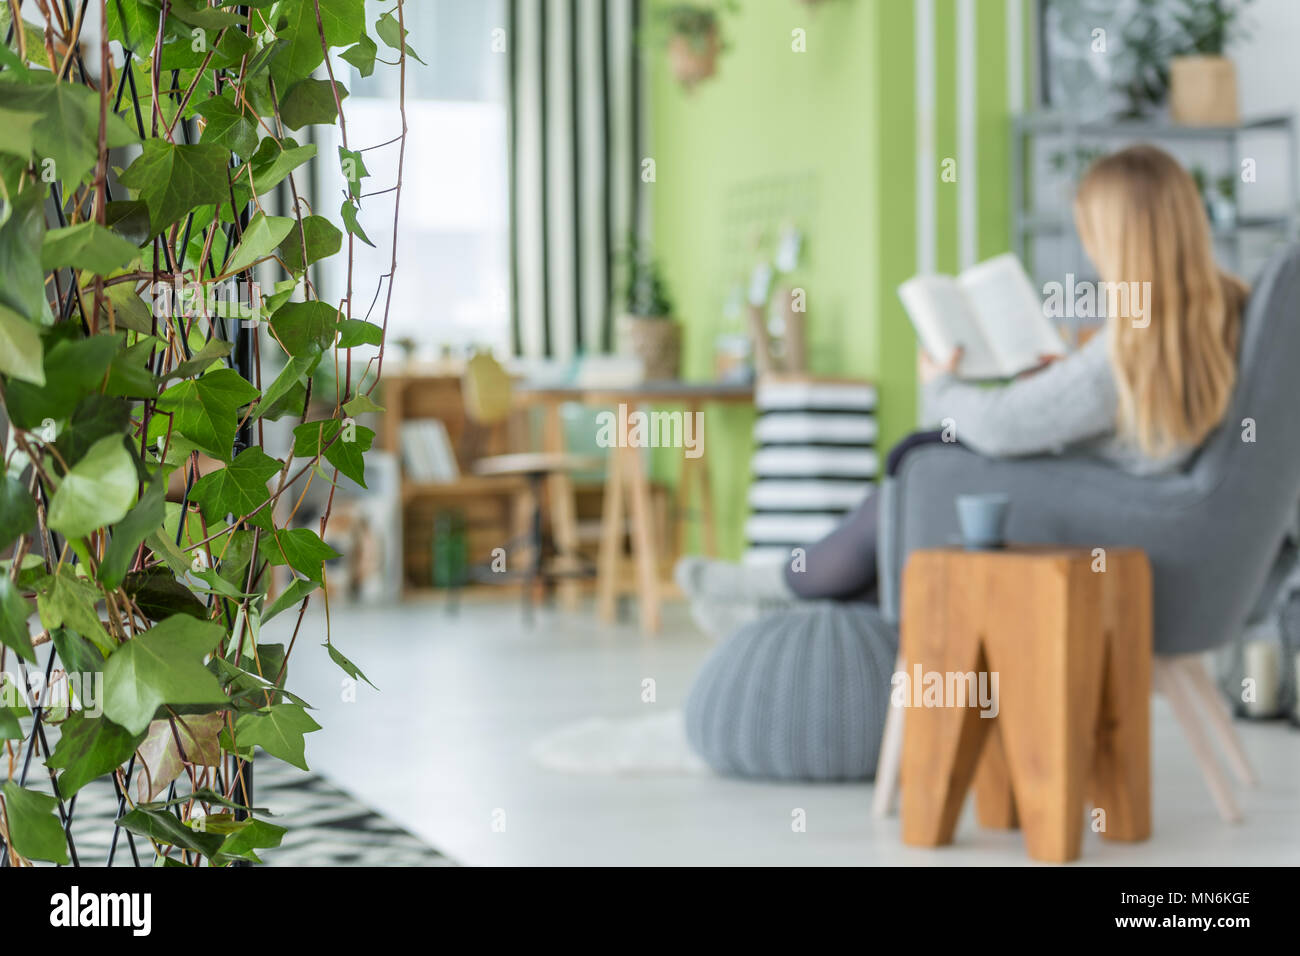 Appartement vert avec ivy garland et fauteuil gris Banque D'Images